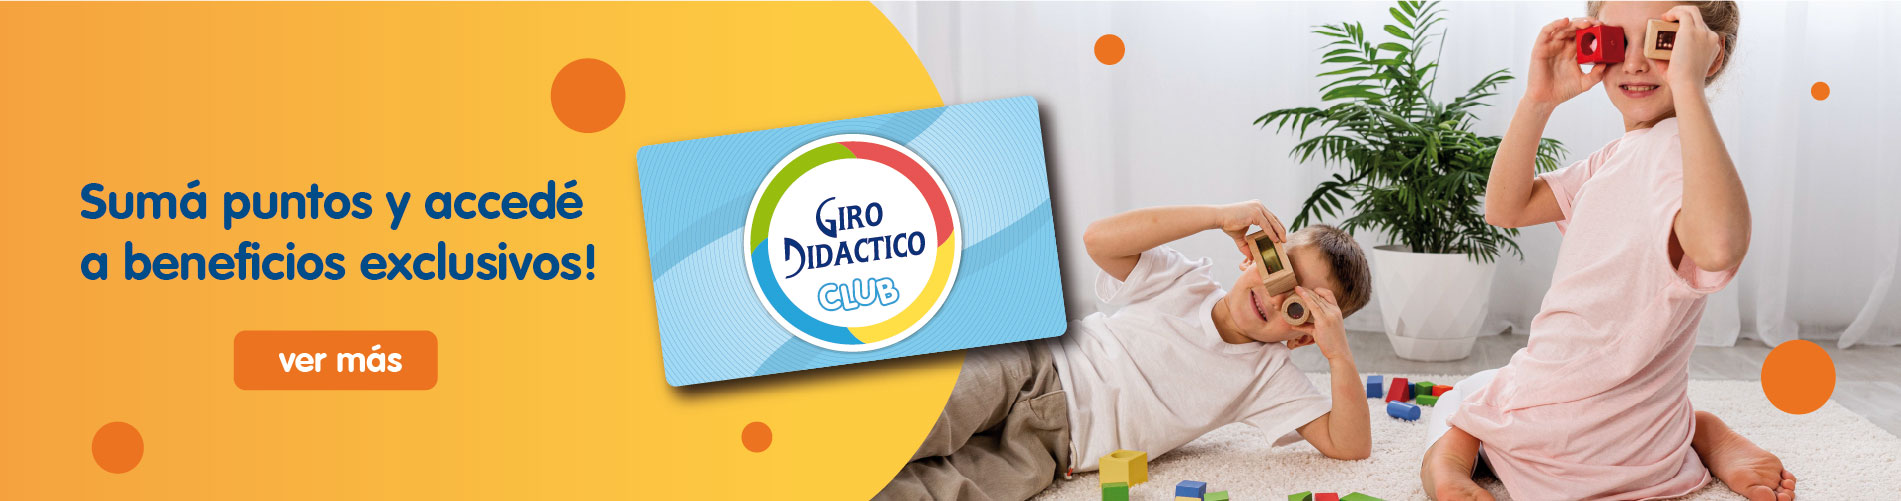 Giro Didáctico - Giro Didáctico - Giro Club